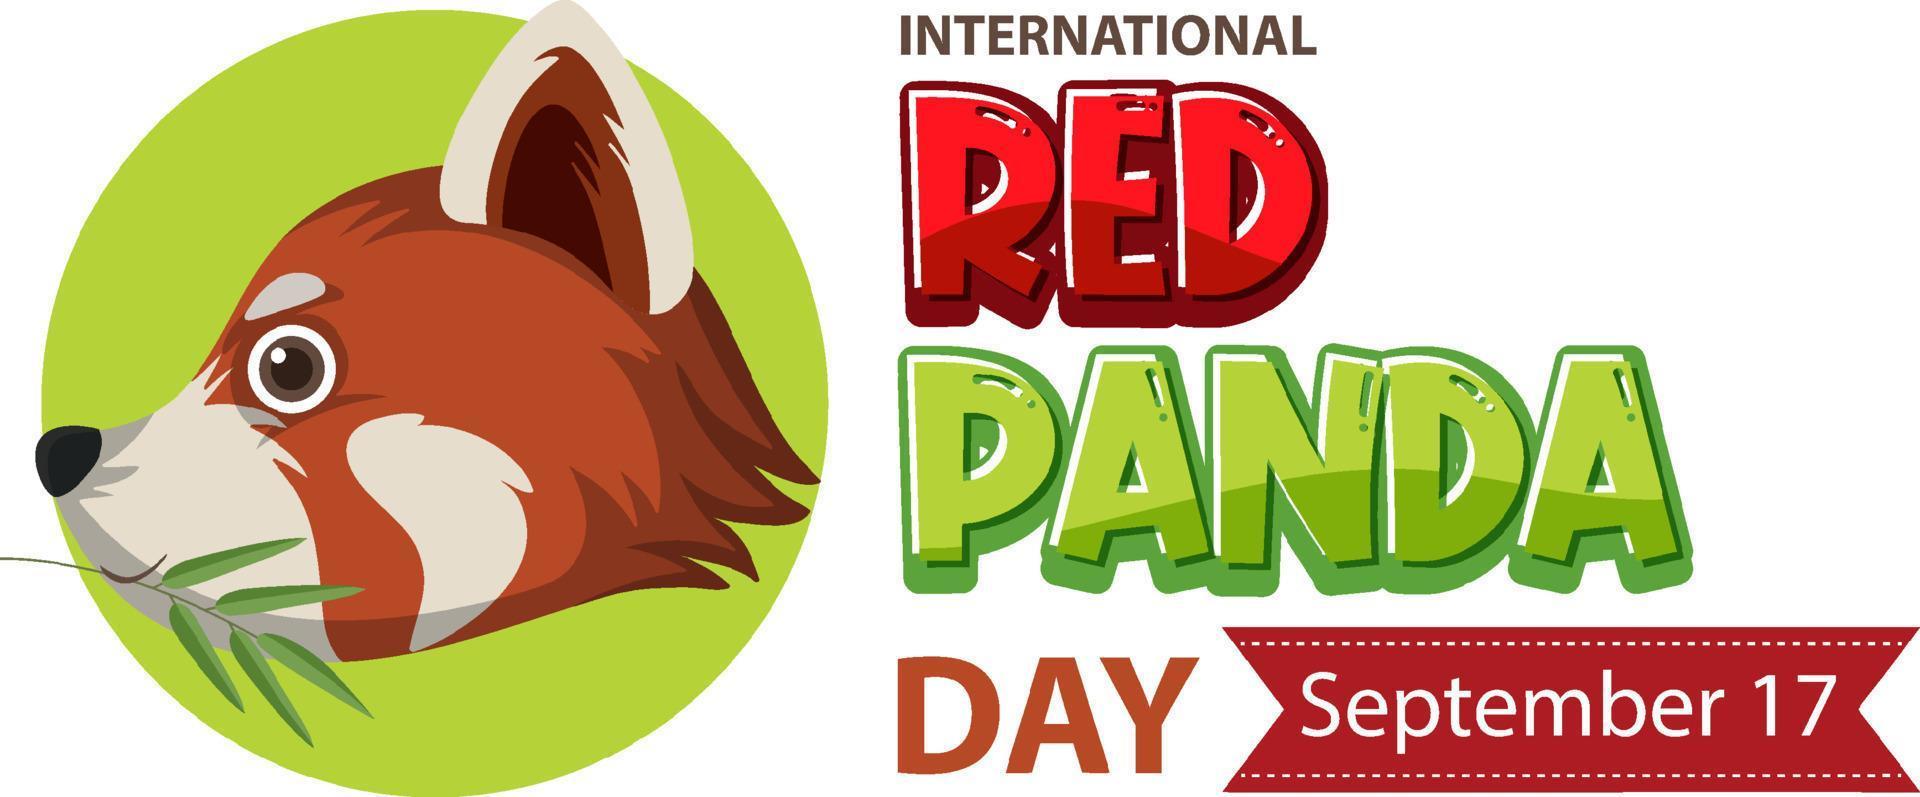 International Red Panda Day On September 17 vector